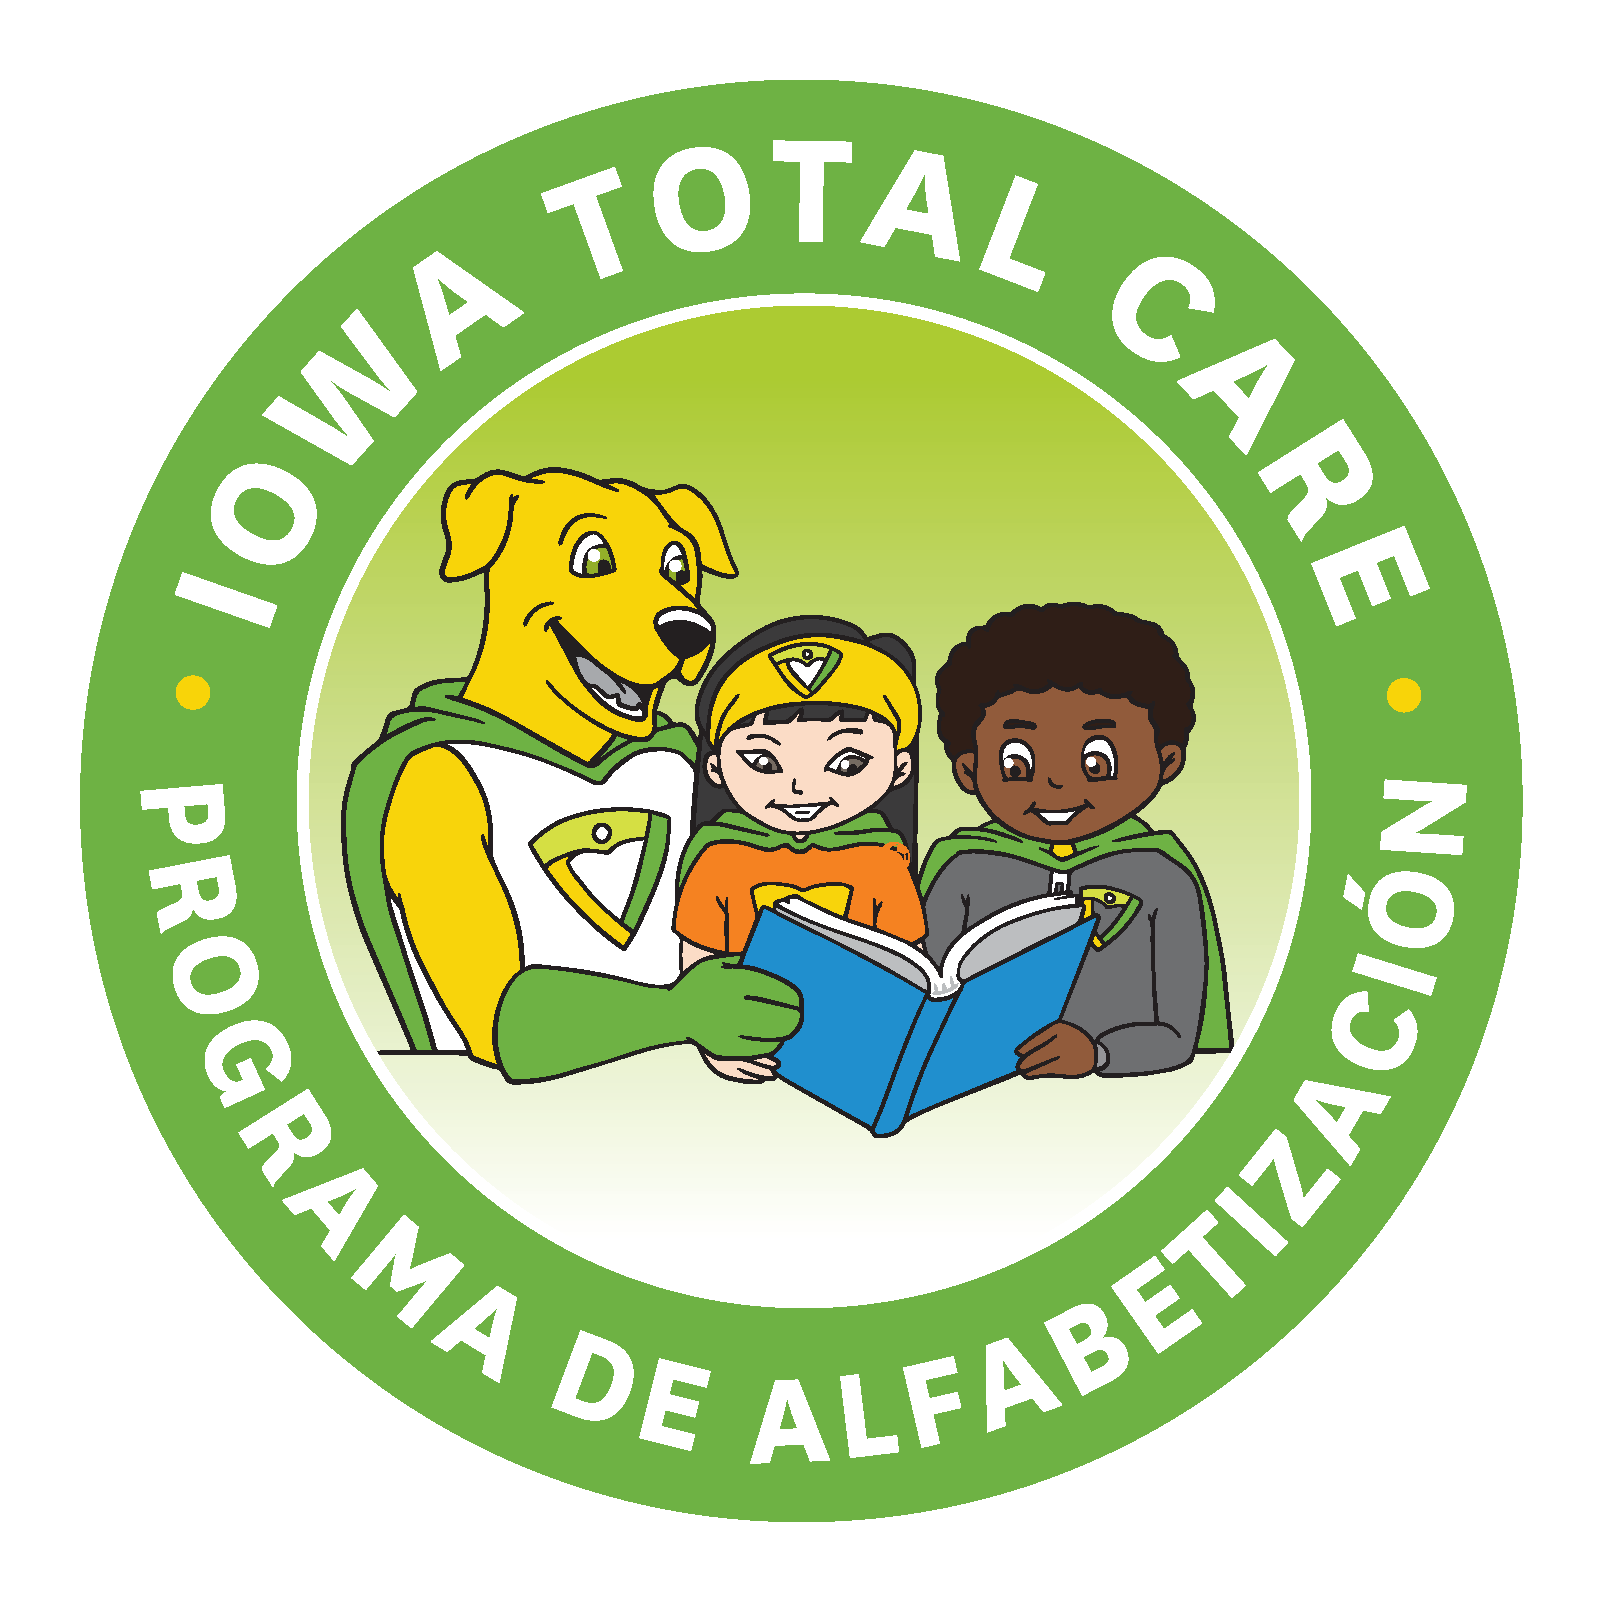 Iowa Total Care Programa de alfabetización